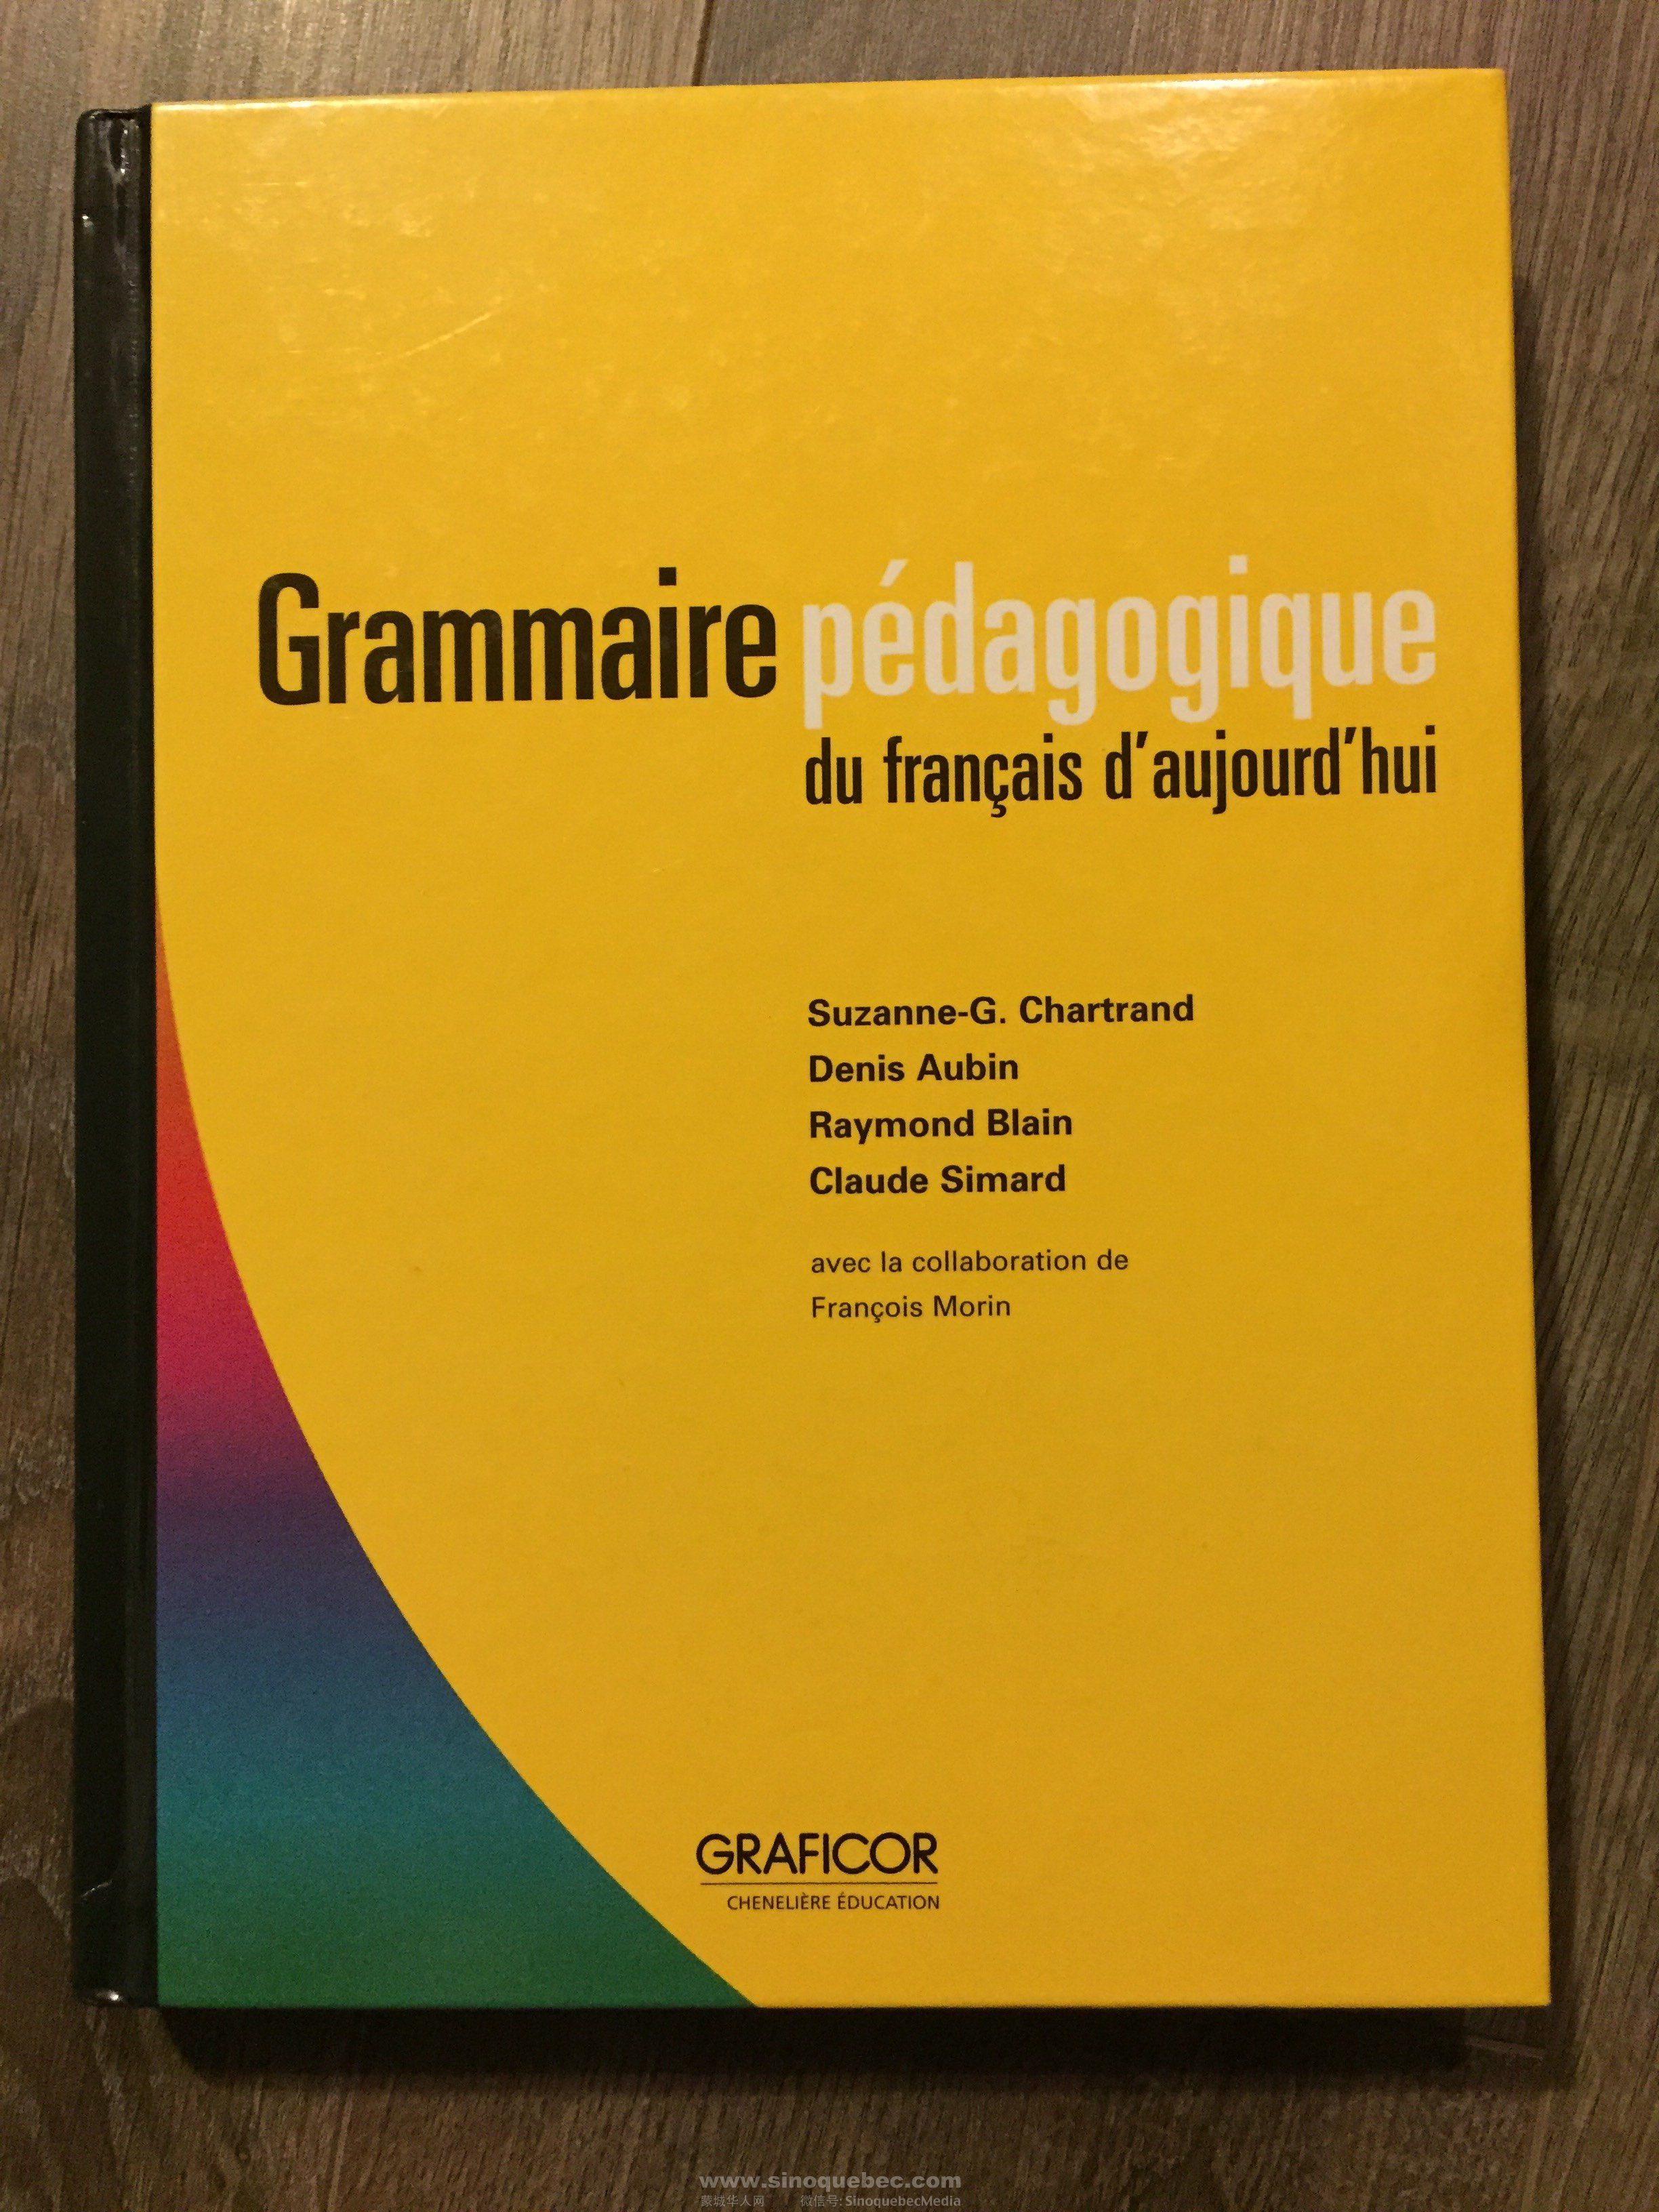 Grammaire pédagogique du français d'aujourd'hui